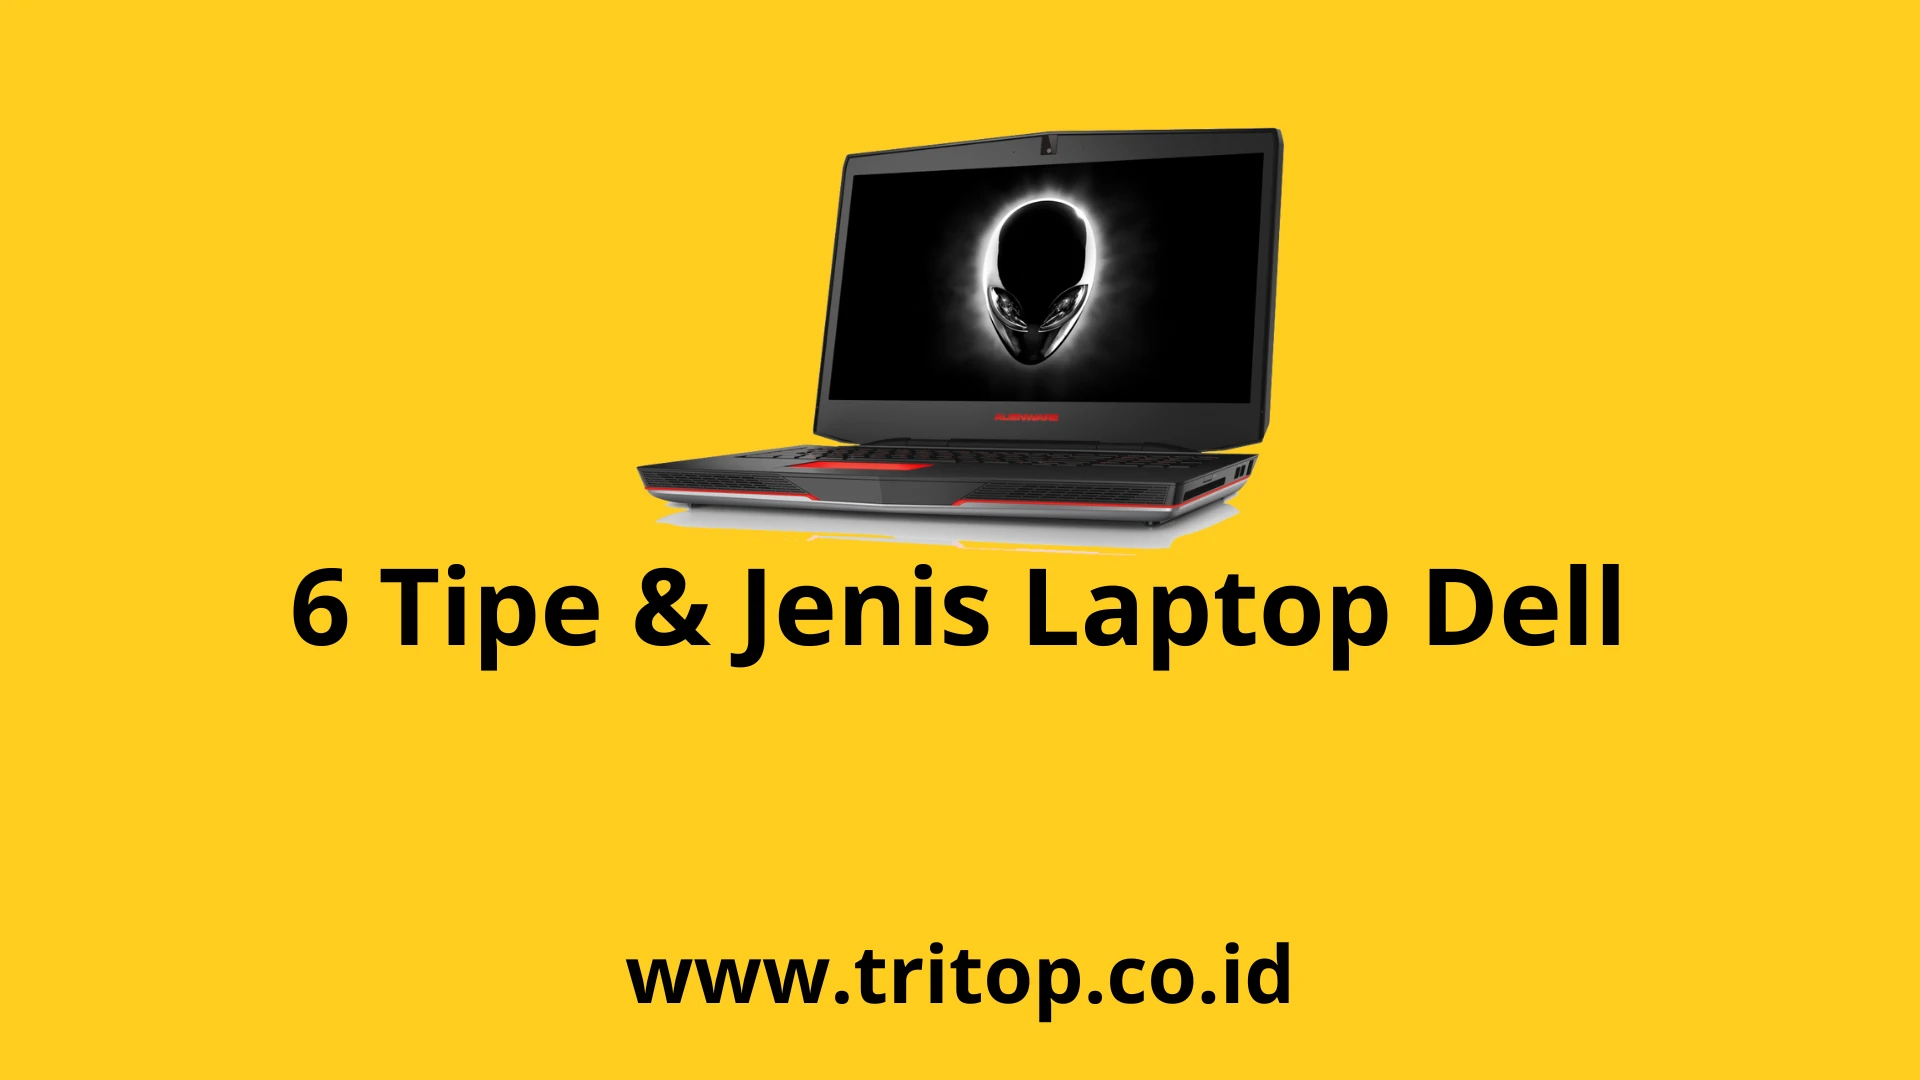 Laptop Dell Tritop.co.id